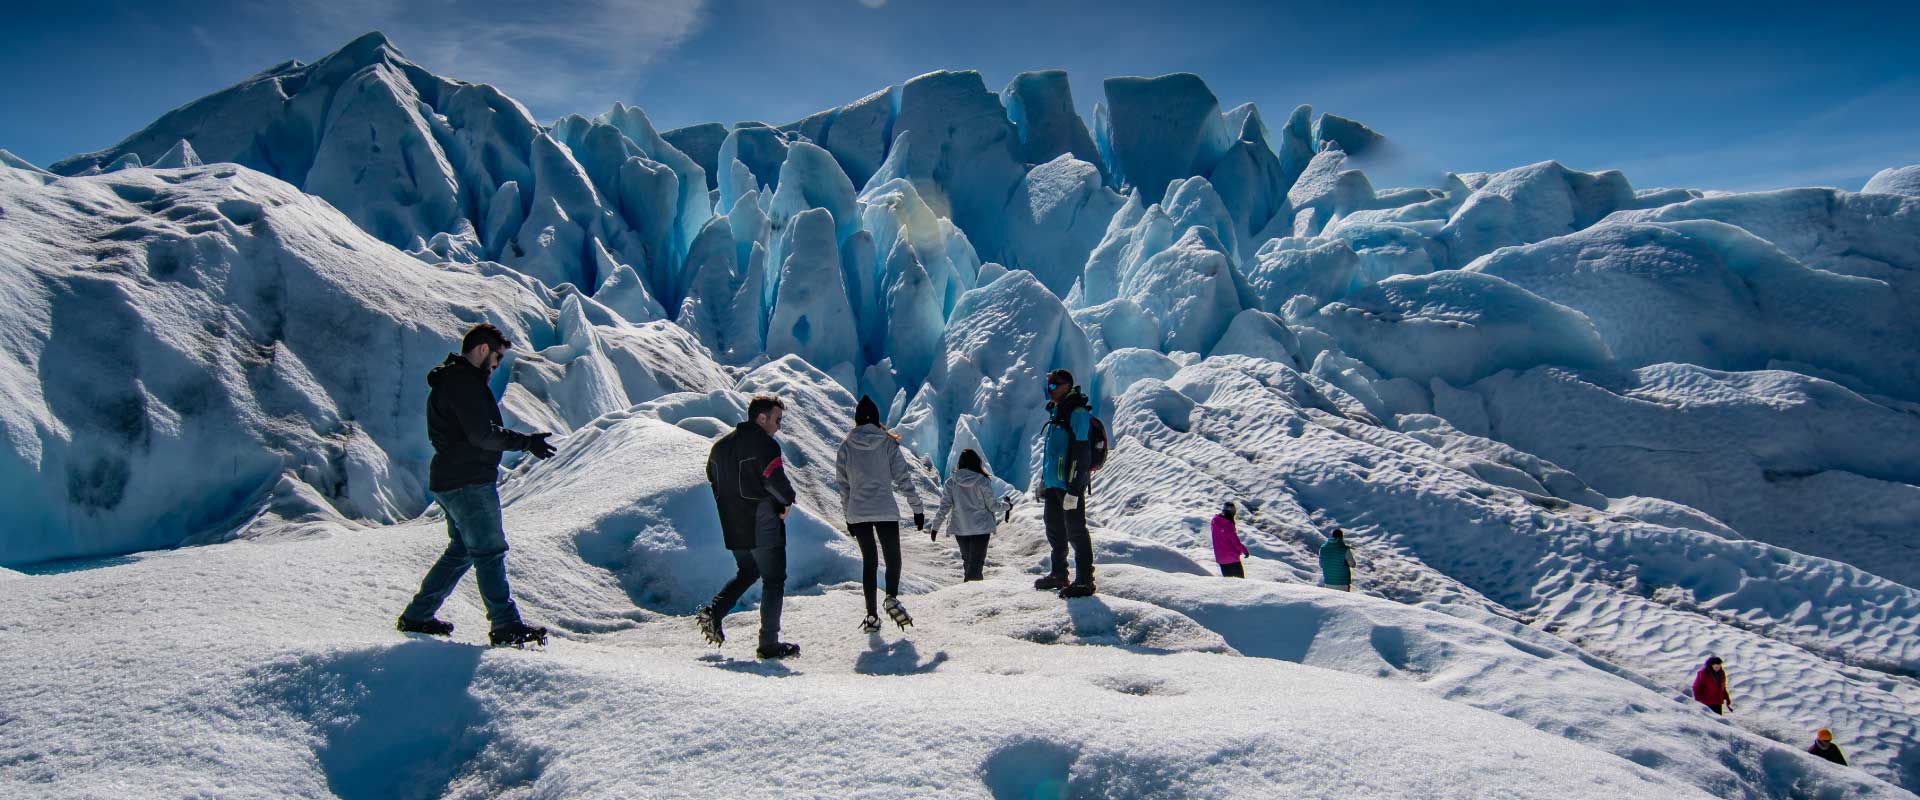 minitrekking glaciar perito moreno